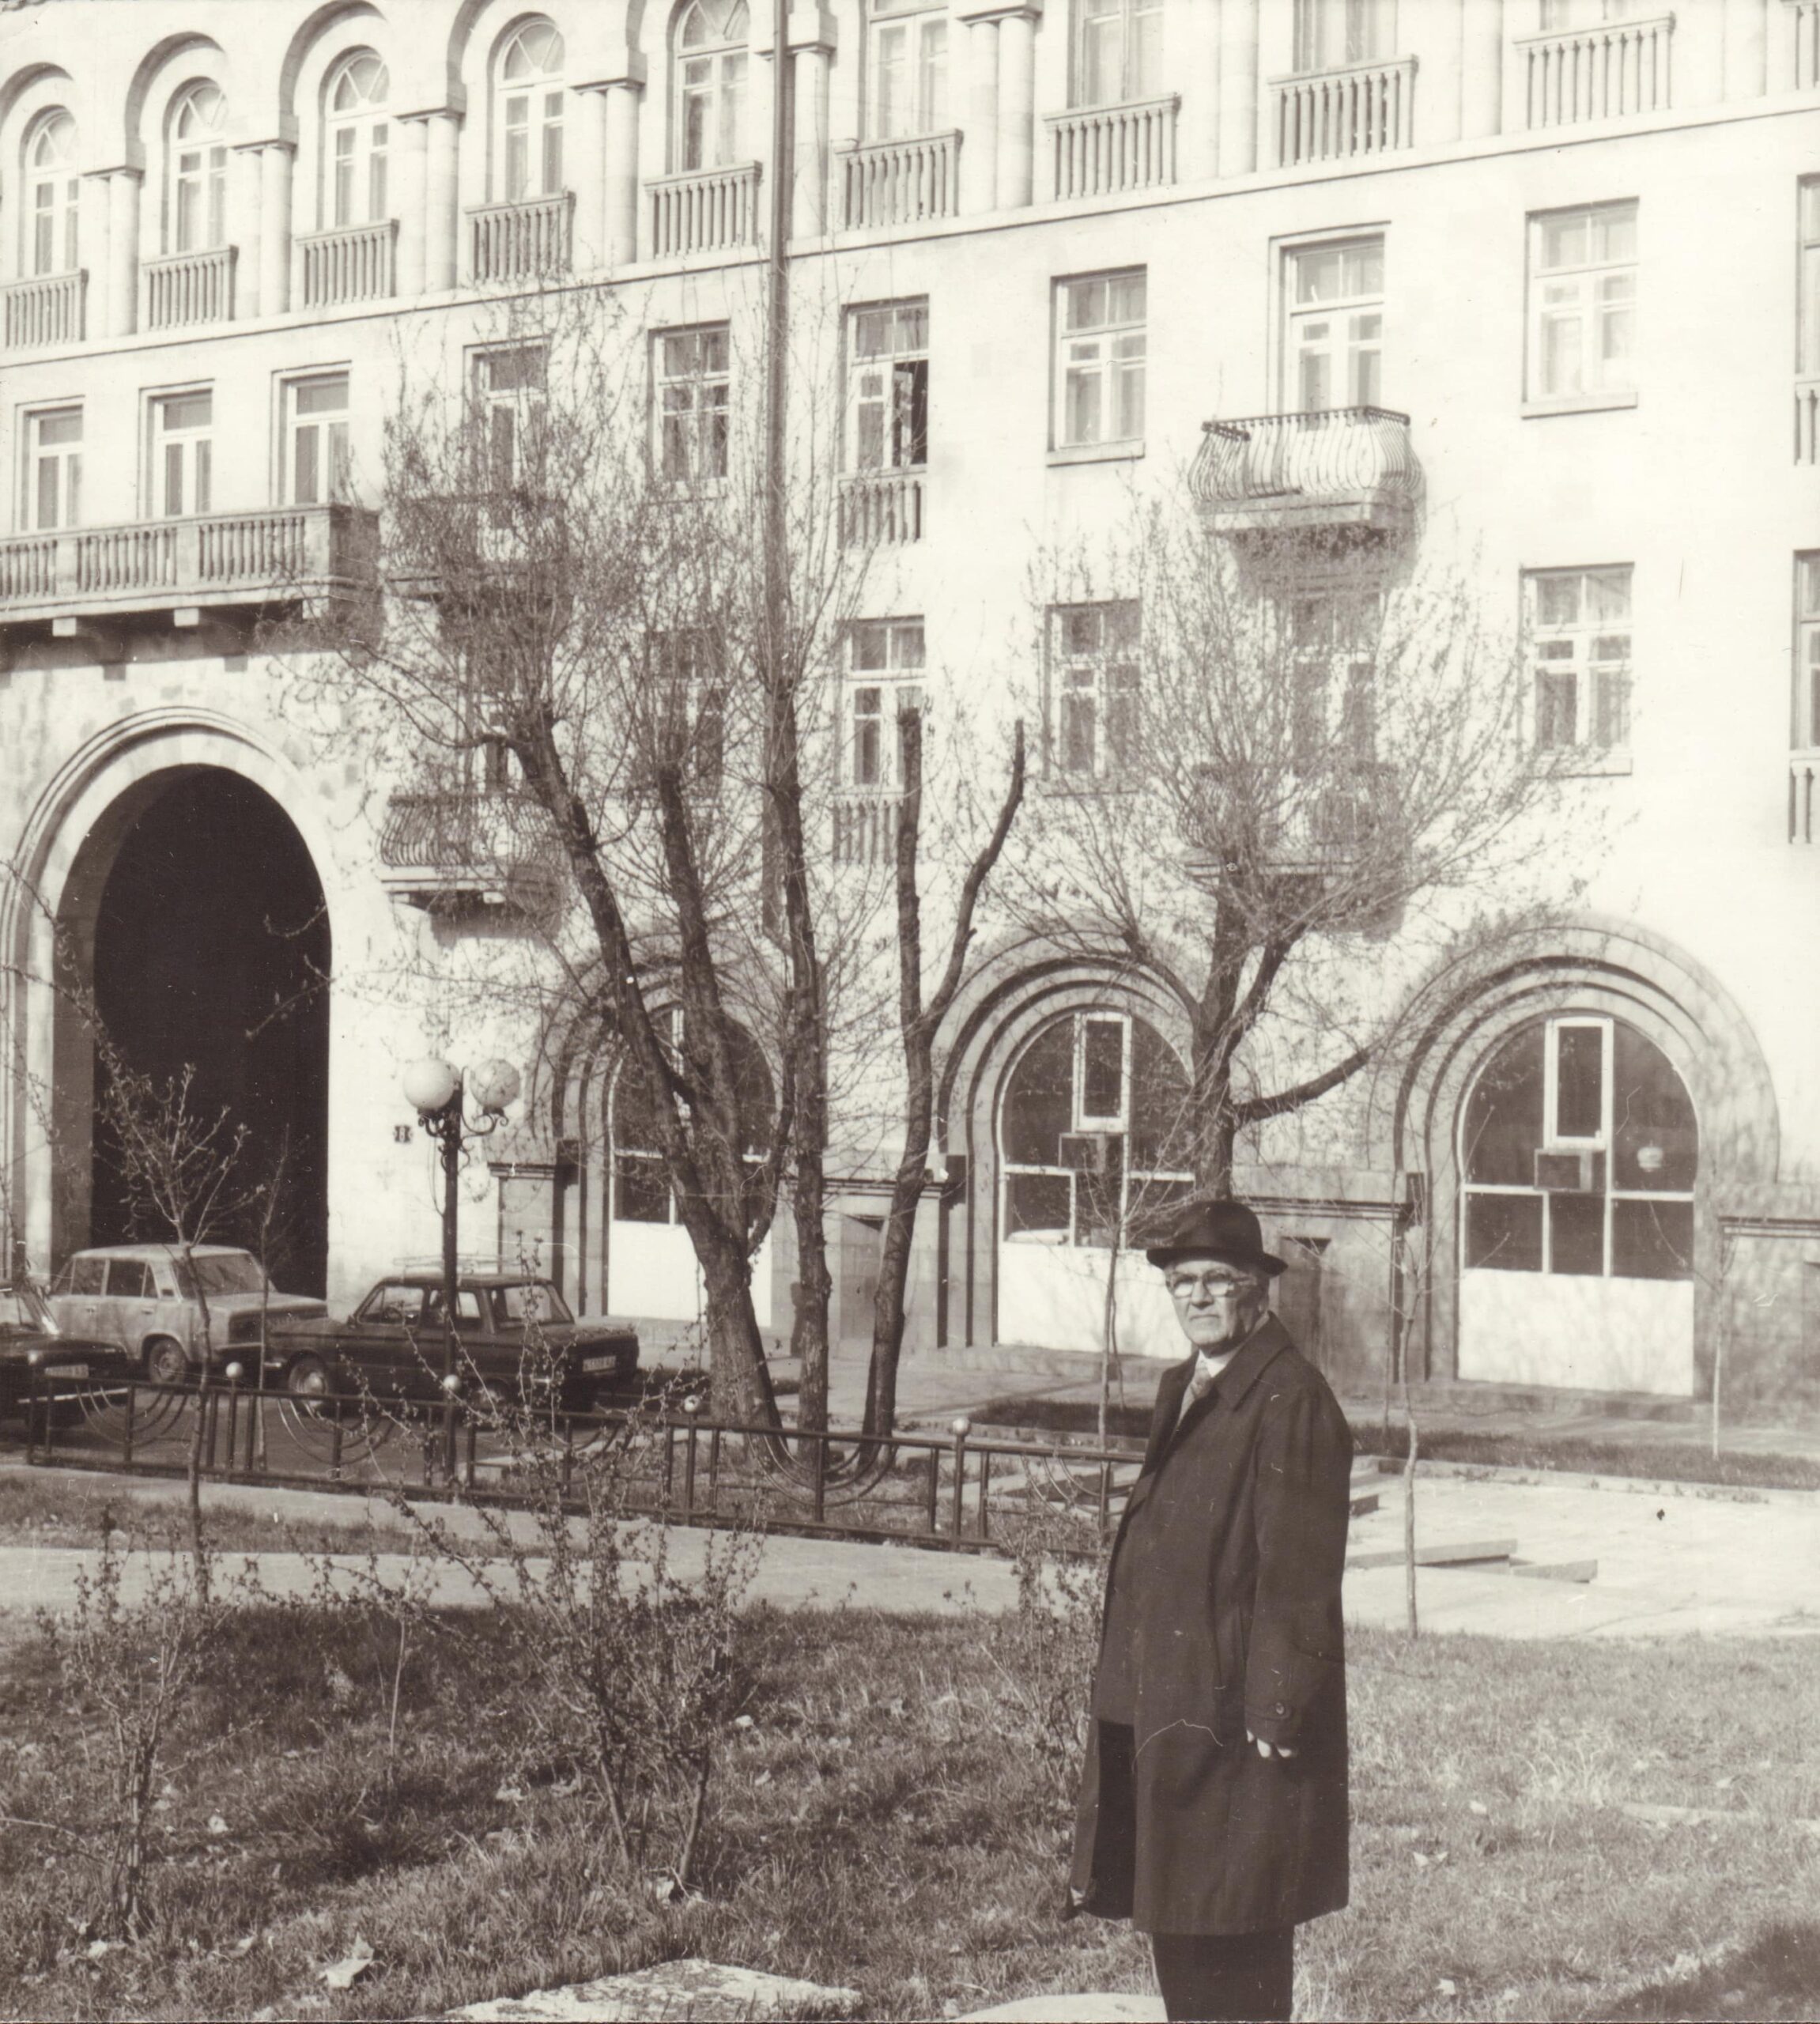 Տ. Մարությանը իր կողմից նախագծած շենքի հետնախորքին (շենքի շահագործման հանձնելուց ի վեր՝ 1957 թ.-ից Տ. Մարությանը բնակվել է Մոսկովյան 8 հասցեում)